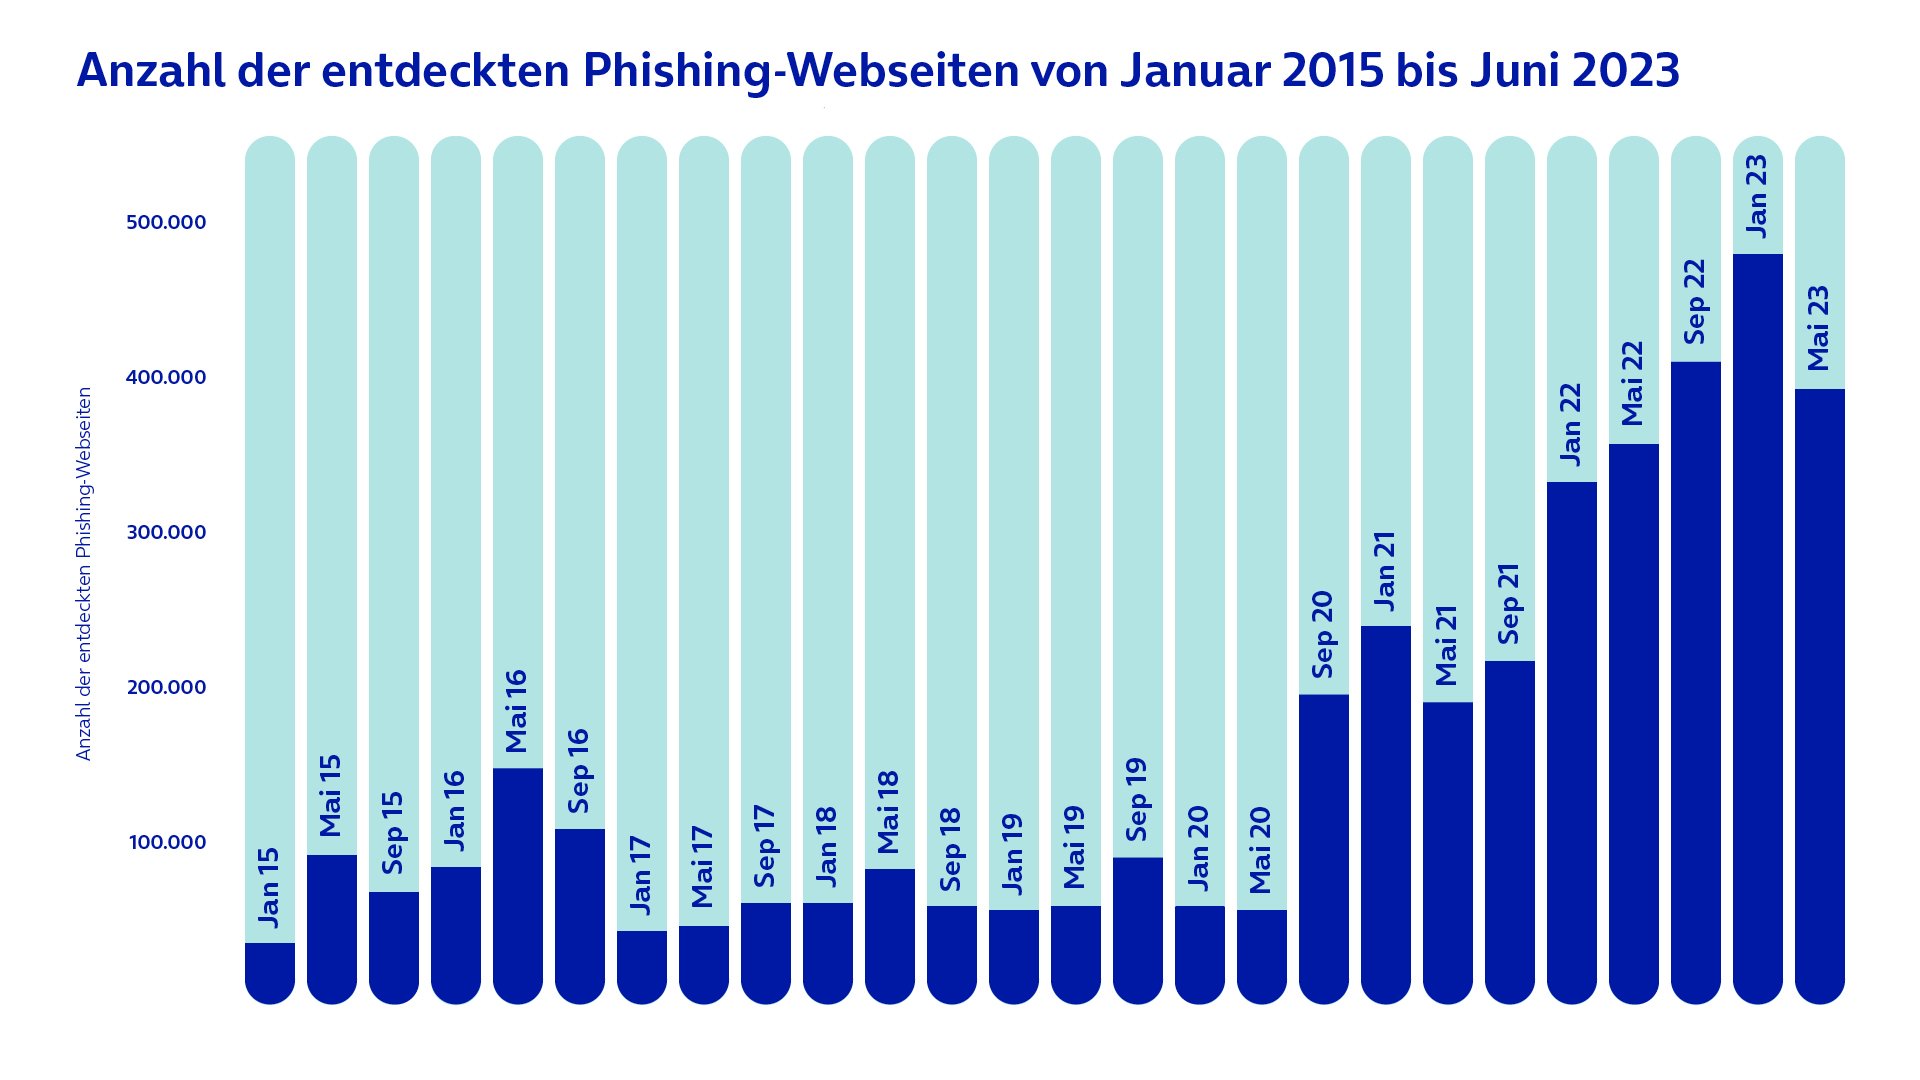 Diese Statistik bildet die Anzahl der entdeckten Phishing-Webseiten von Januar 2015 bis Dezember 2022 ab. Laut der Quelle wurden im Dezember 2022 rund 459.139 Phishing-Webseiten weltweit entdeckt.